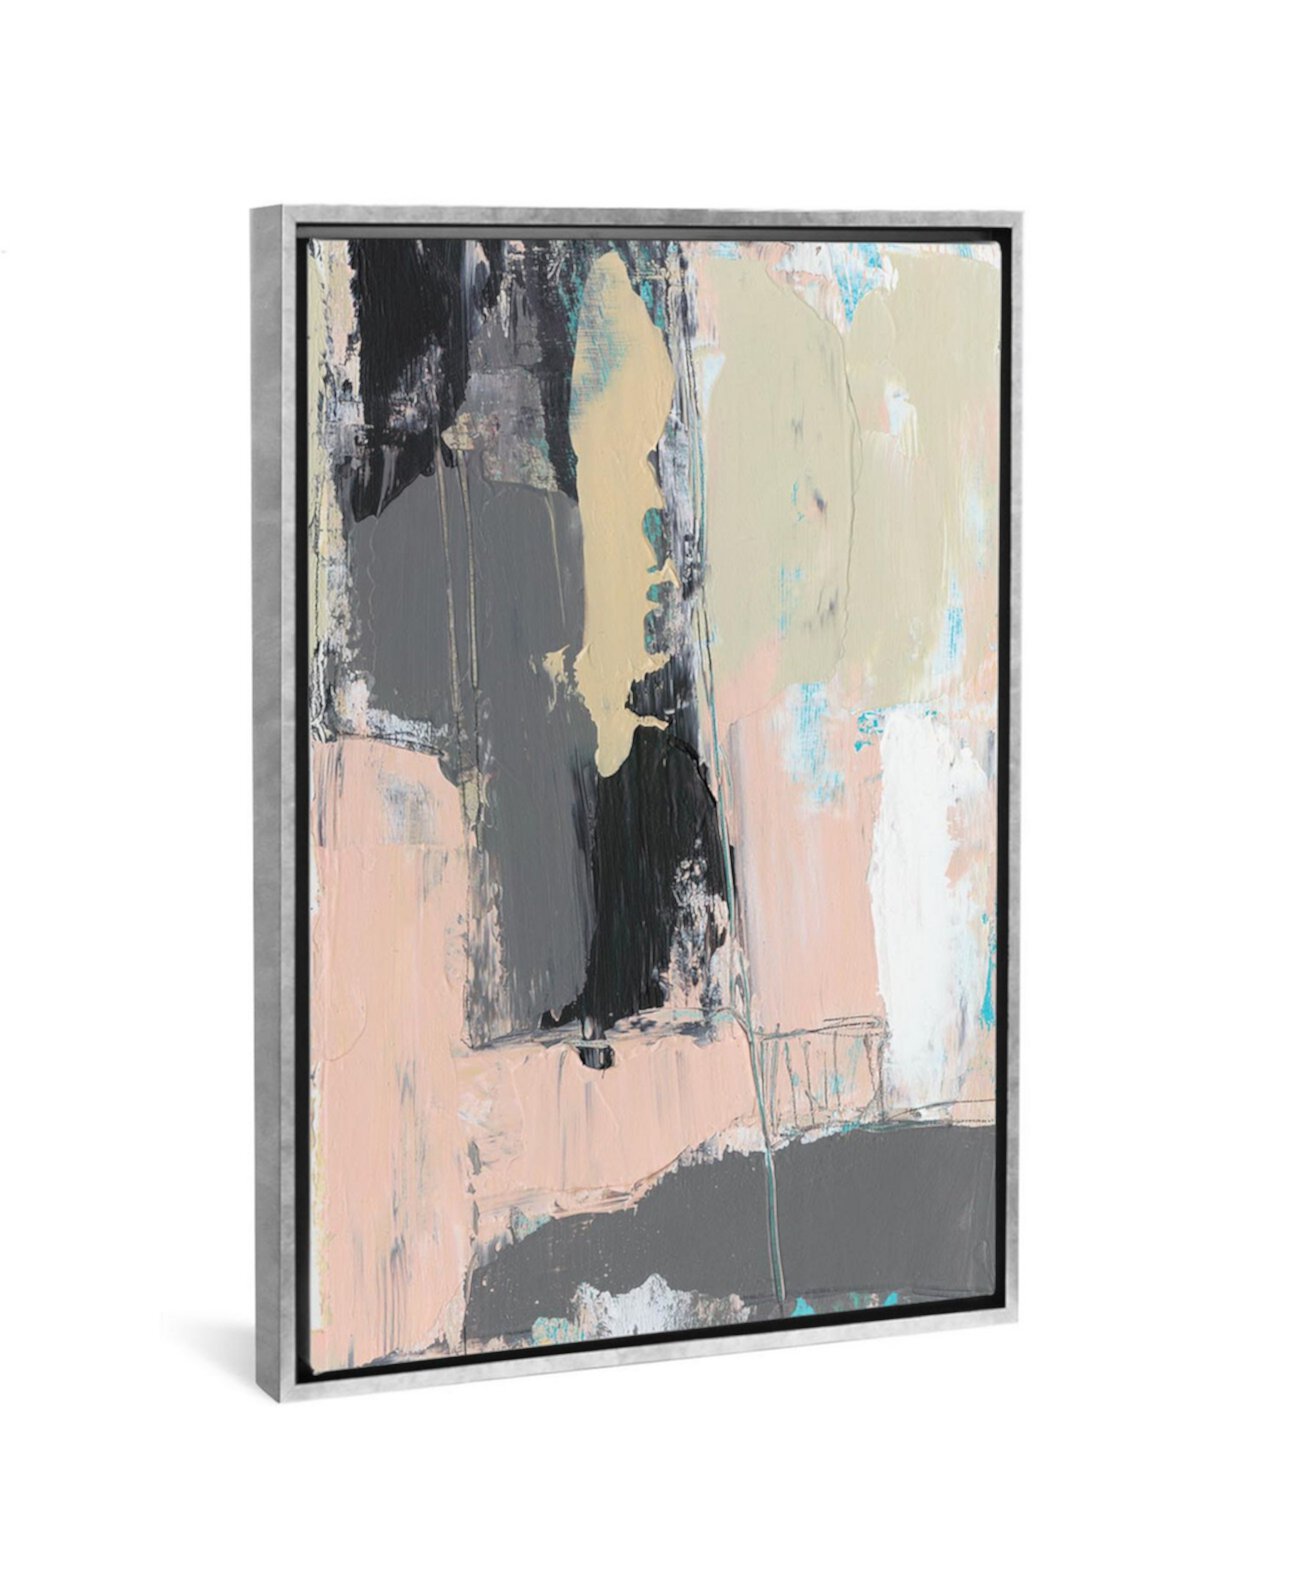 Картина «Pink-A-Boo III» от Дженнифер Голдбергер на холсте в упаковке - 40 дюймов x 26 дюймов x 0,75 дюйма ICanvas